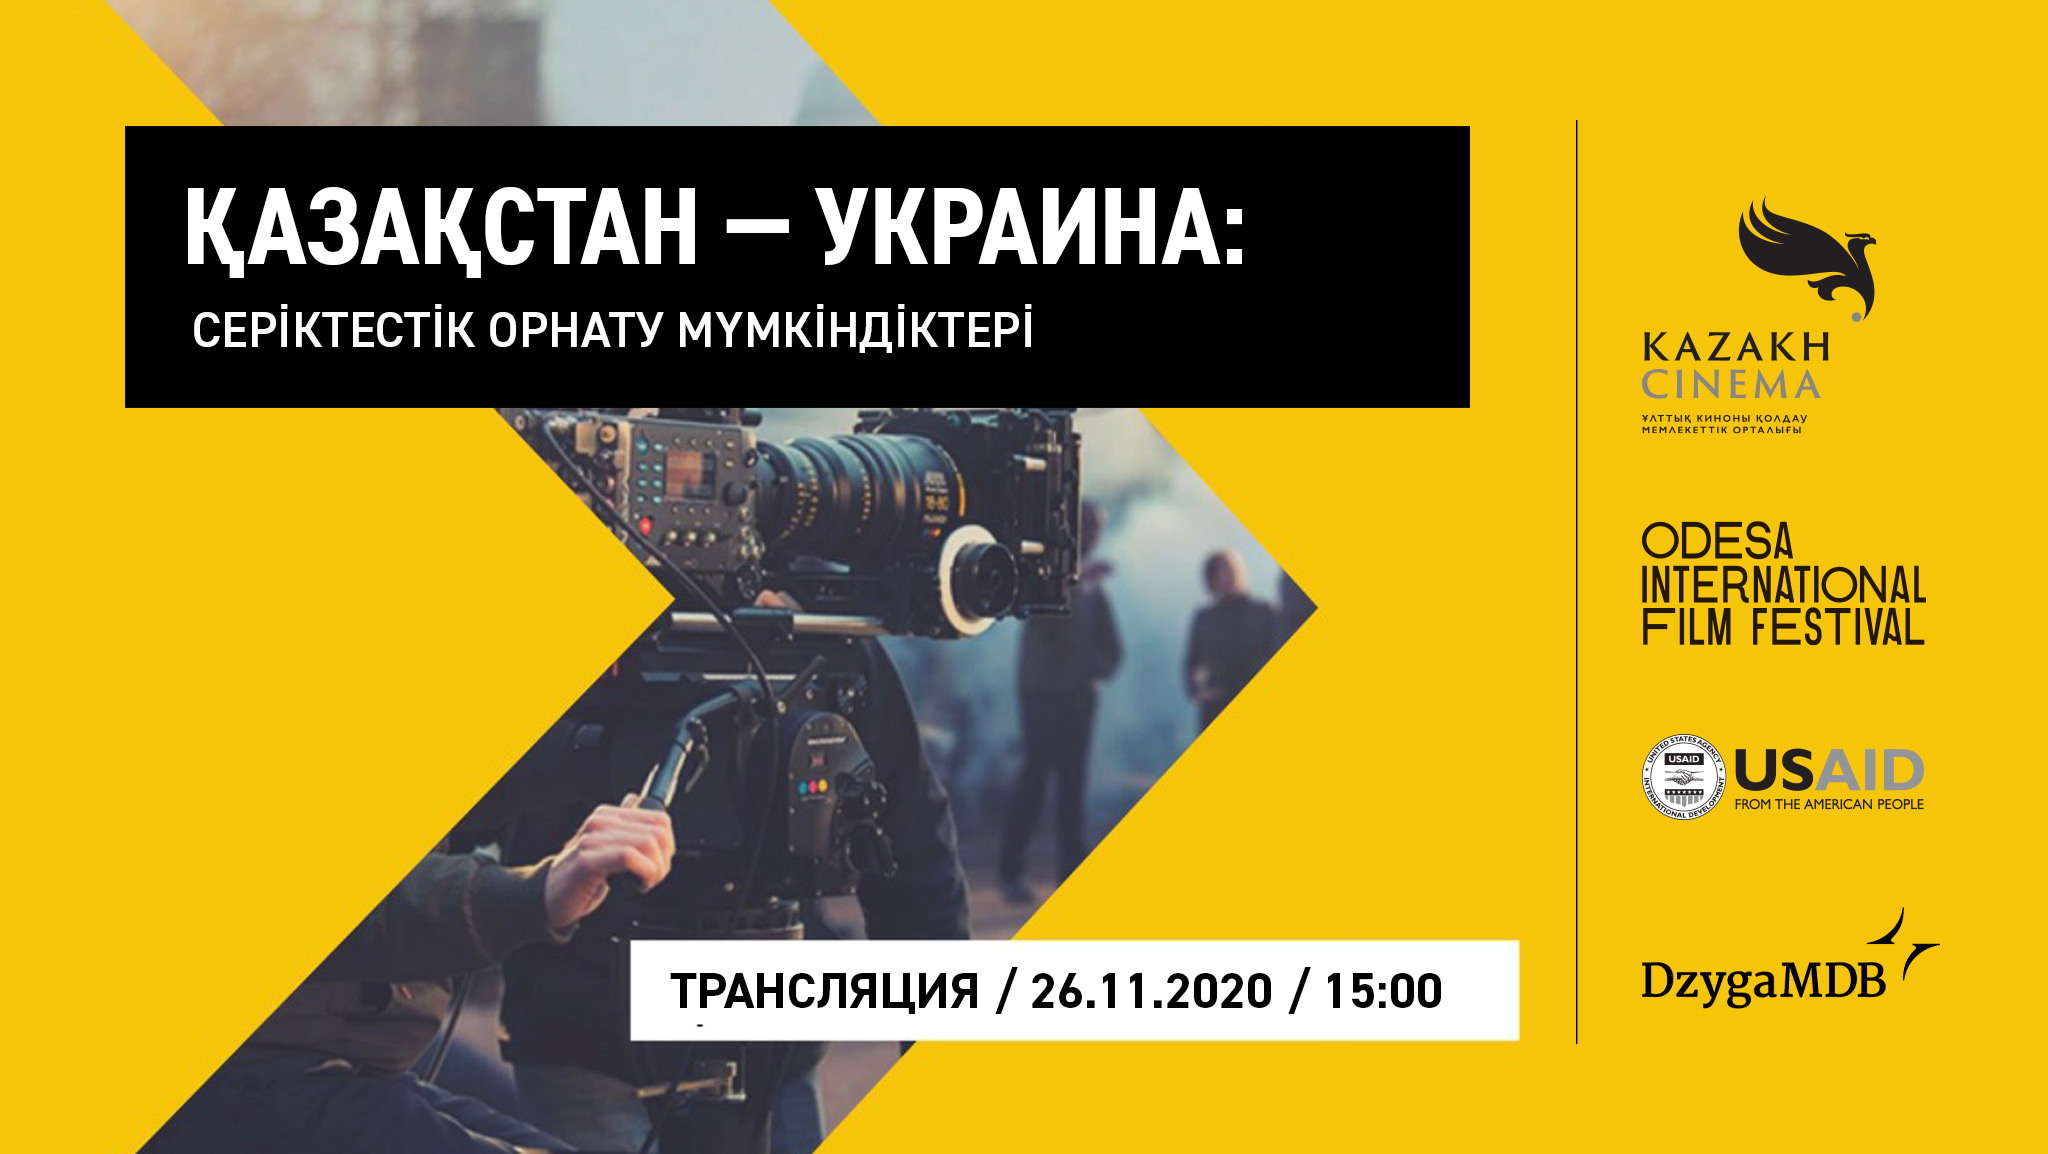 Қазақстан мен Украина киногерлері серіктестік орнату мүмкіндіктерін талқылайды